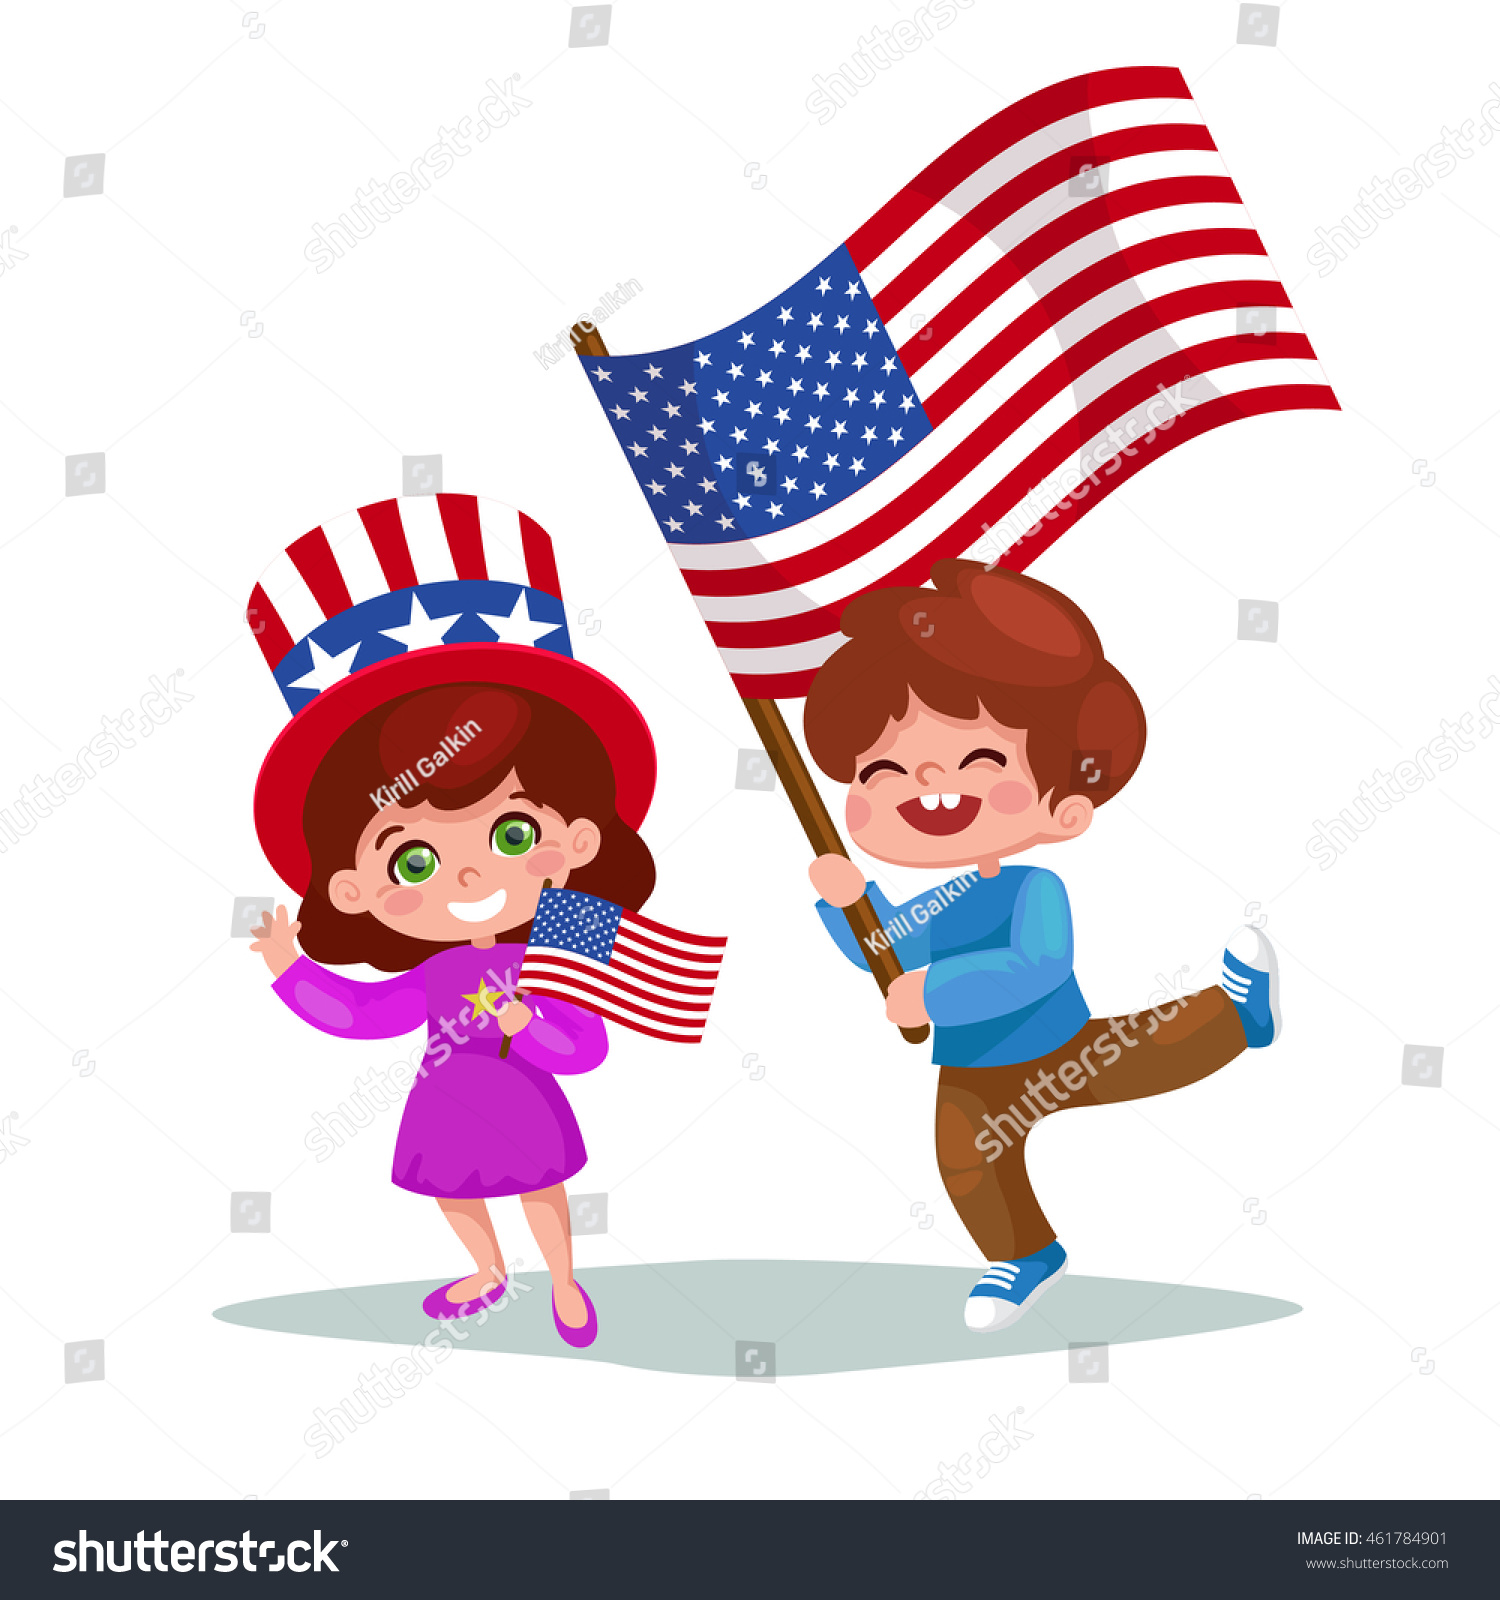 Ребёнок с американским флажком